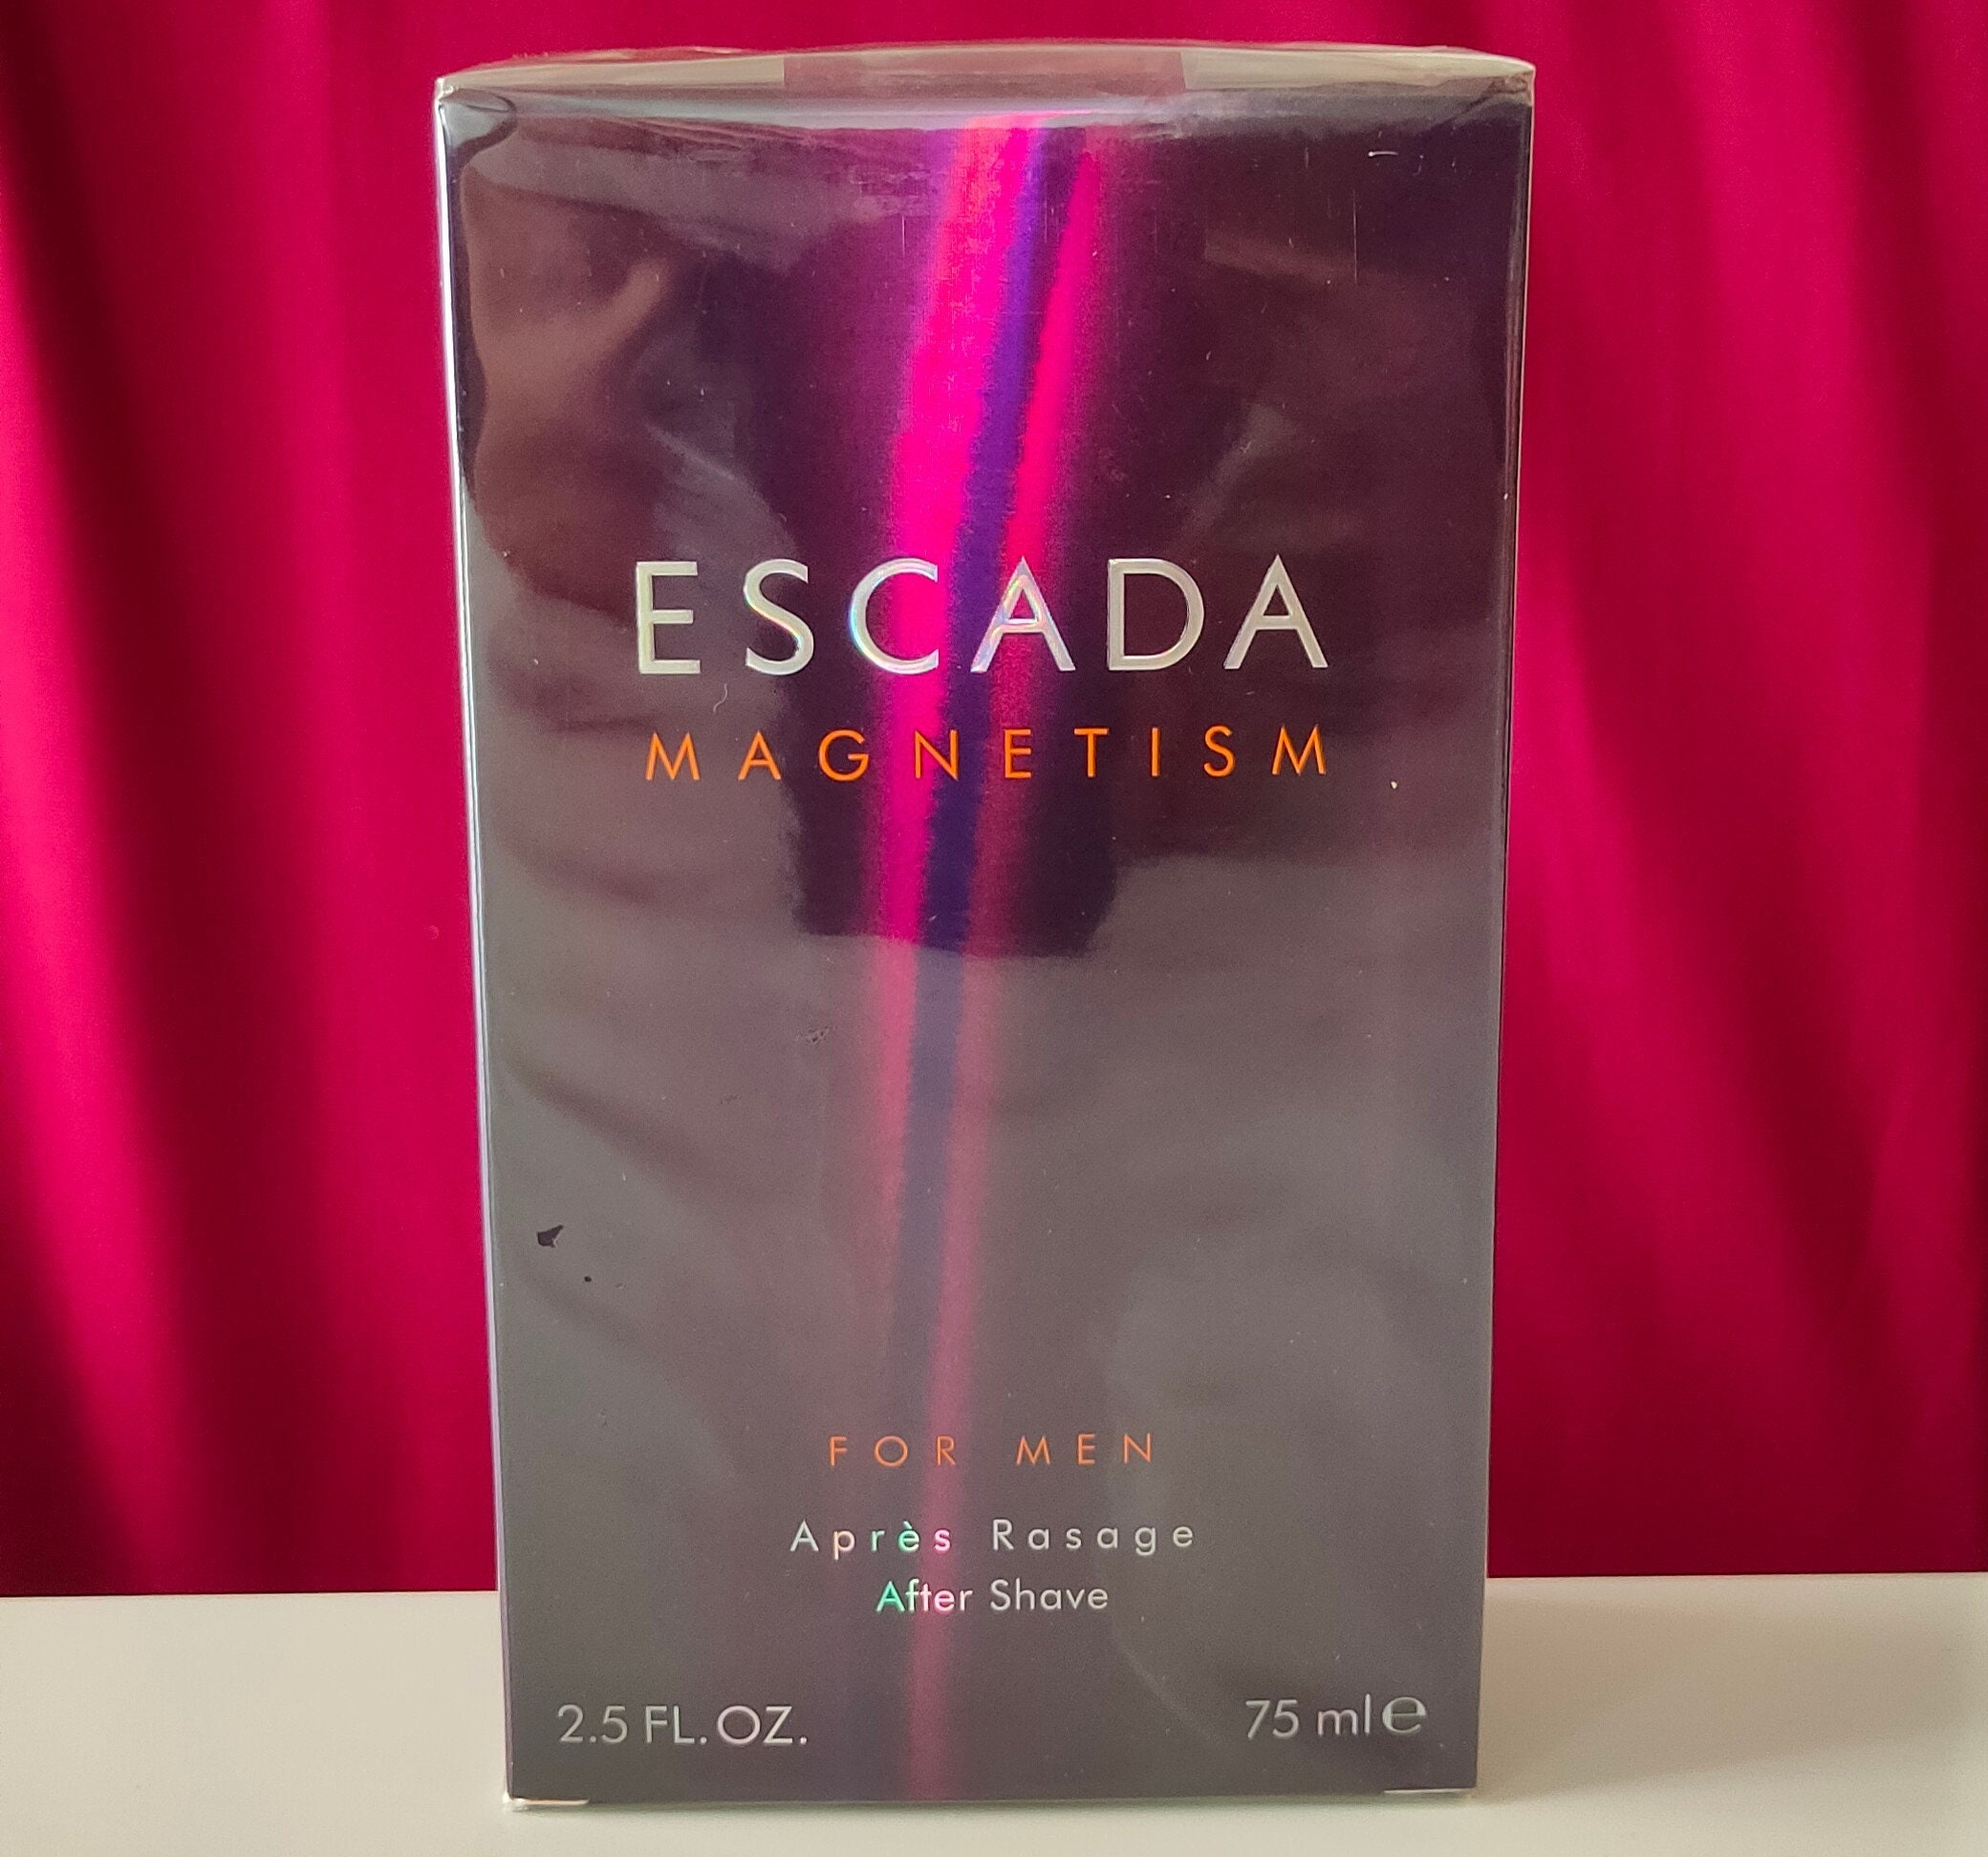 Escada Magnetism for Men After 75ml Splash -